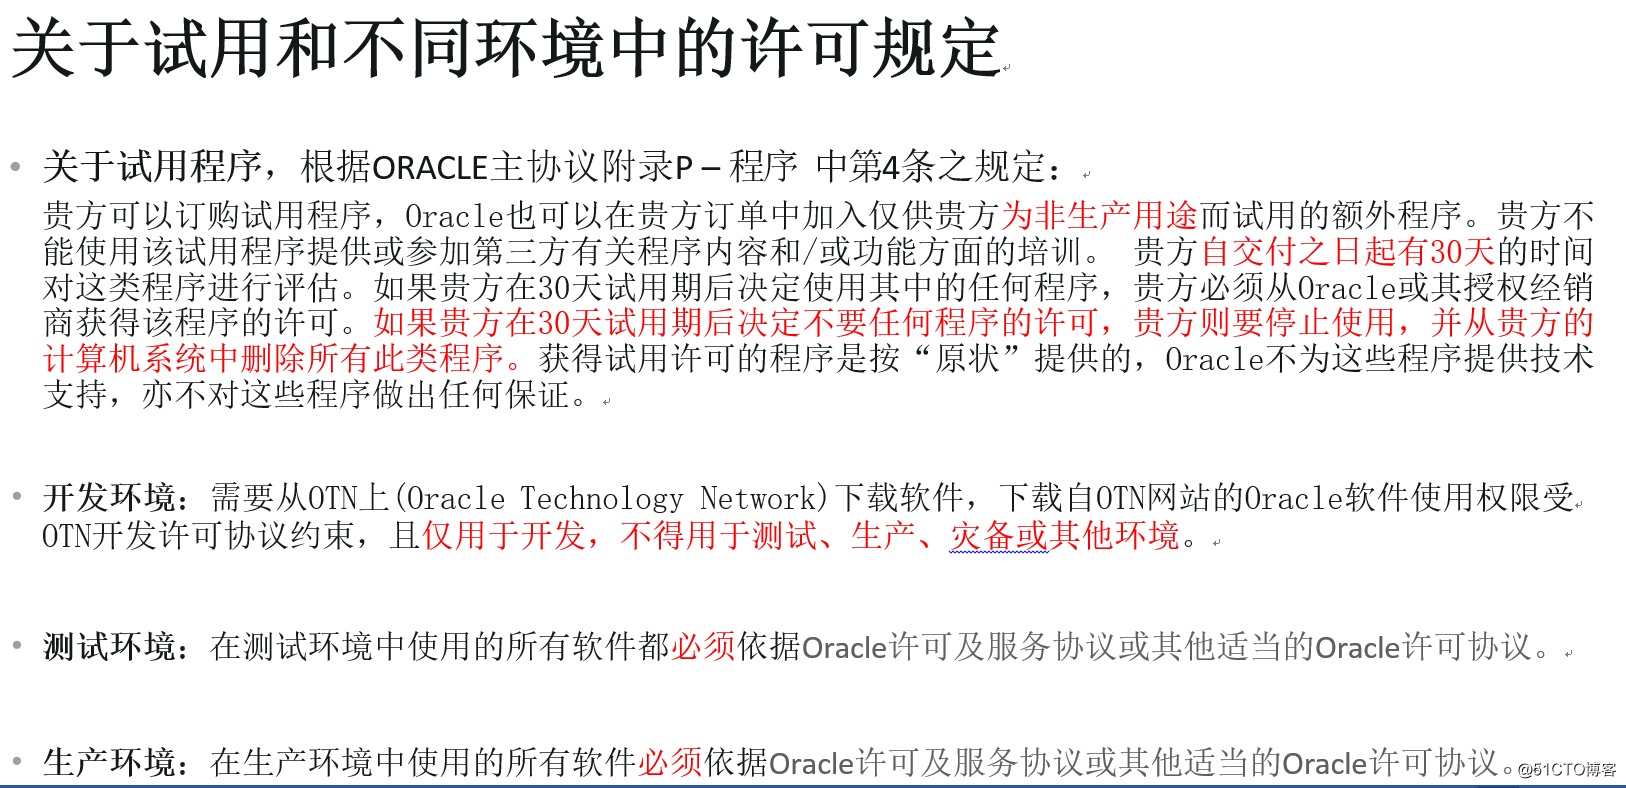 Oracle原厂授权许可使用说明